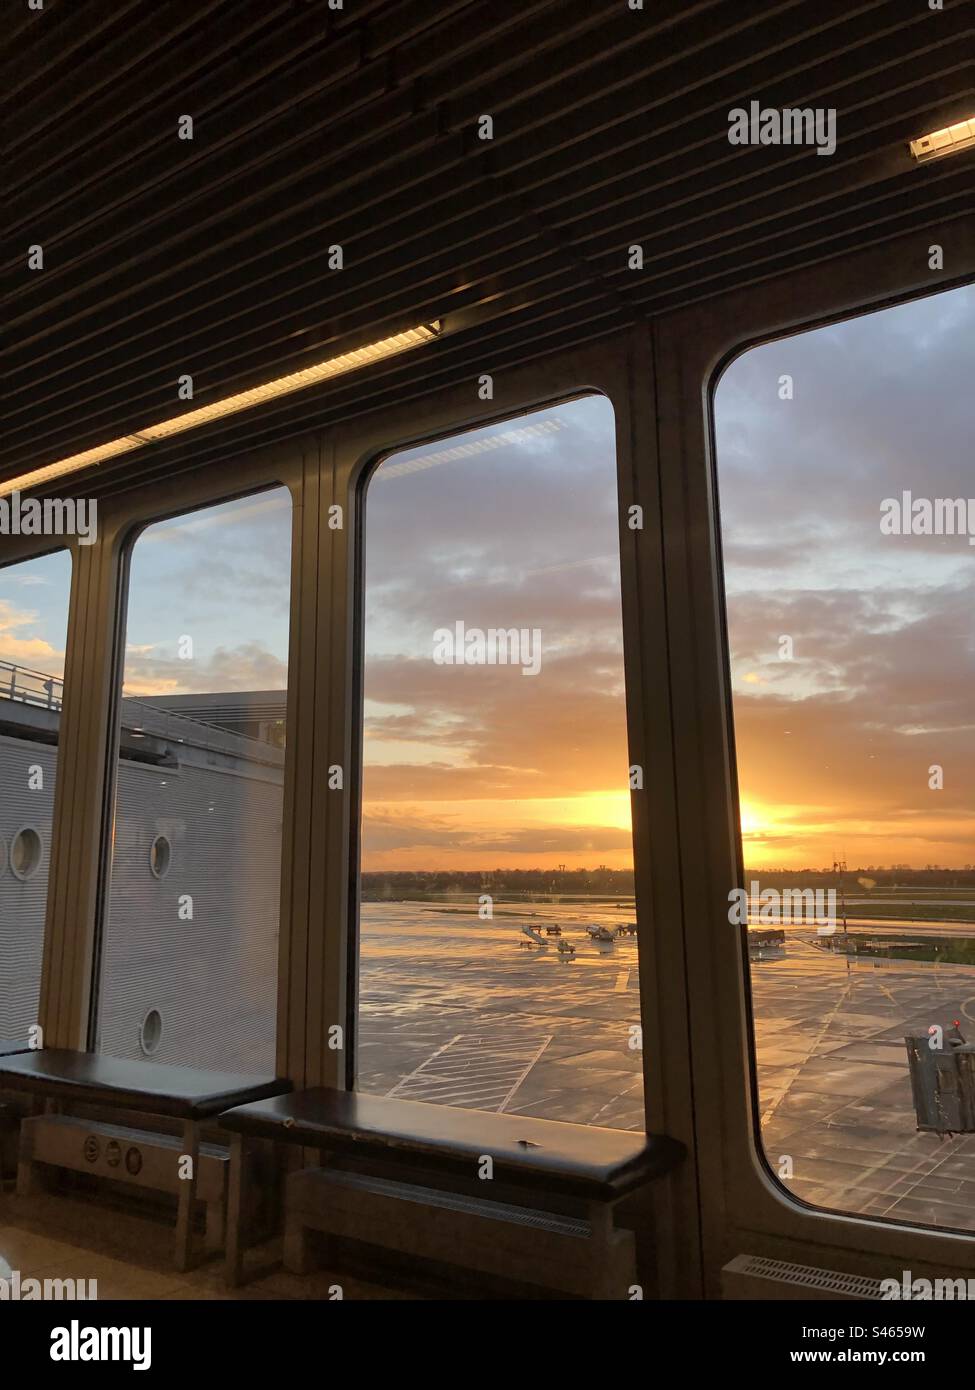 Sonnenuntergang vom Fenster des Flughafens aus gesehen Stockfoto